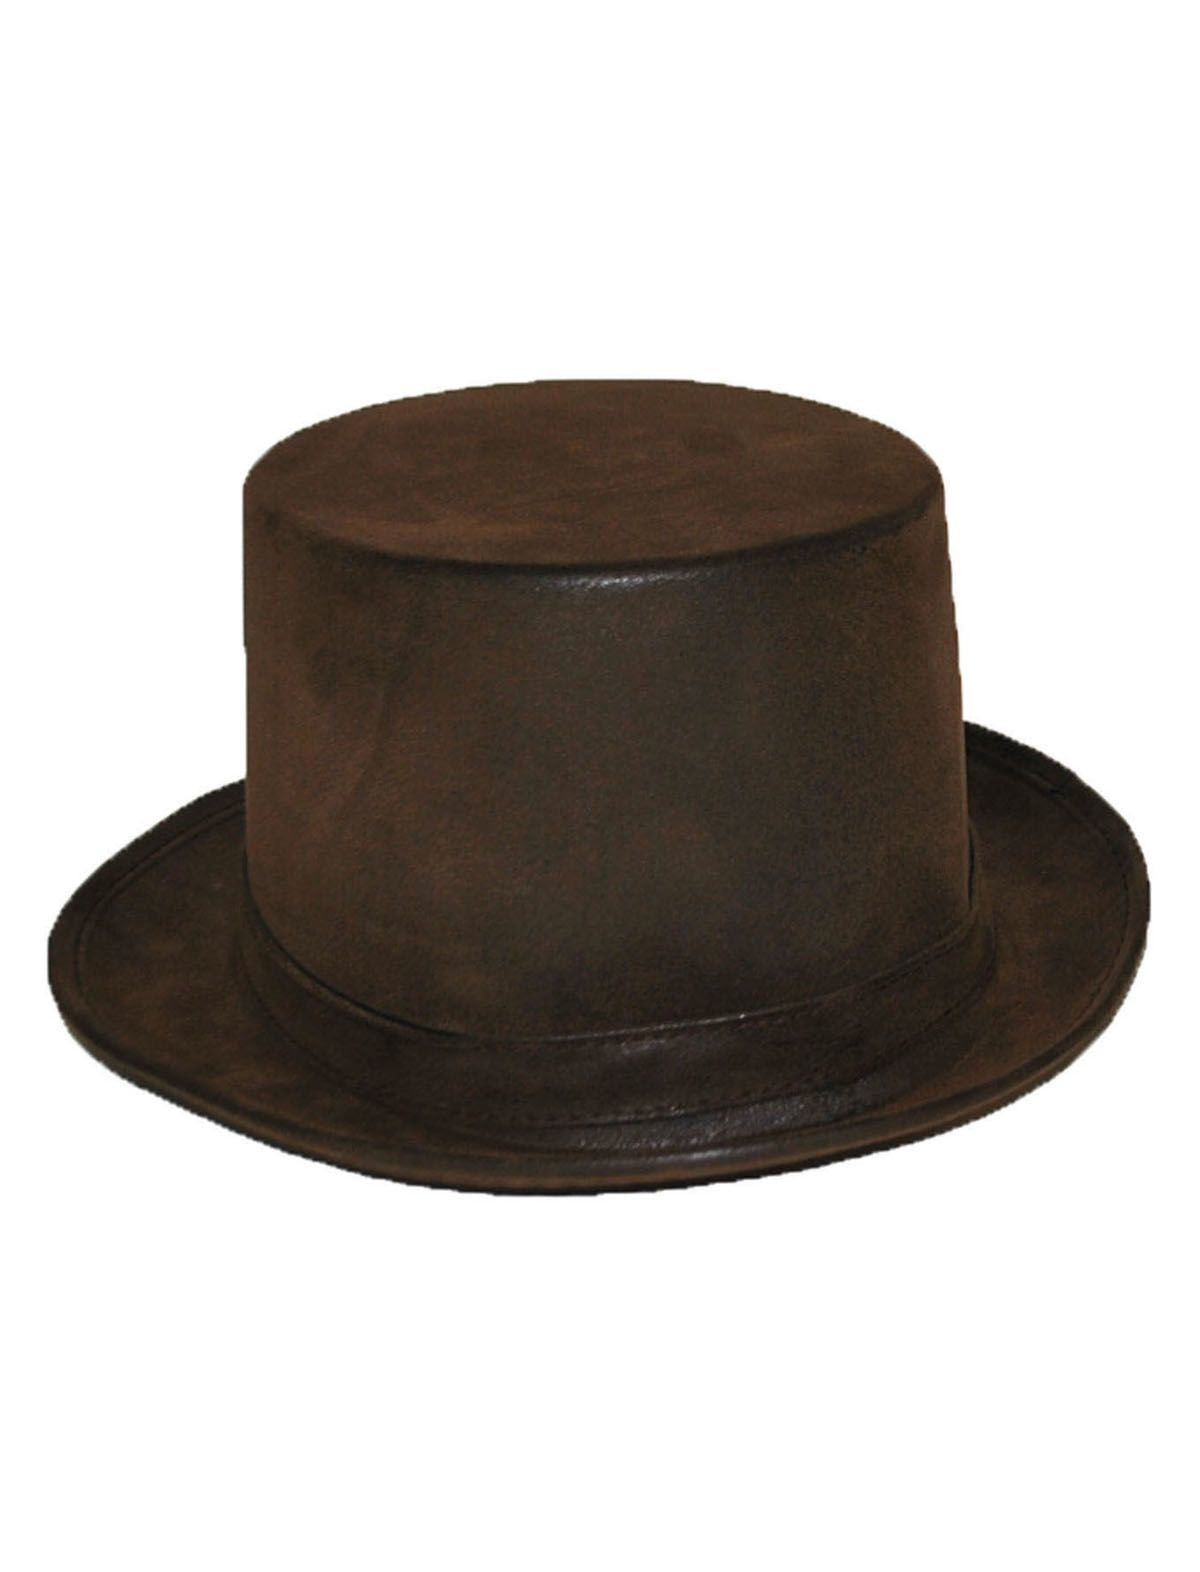 Mooie bruine hoge hoed lederlook